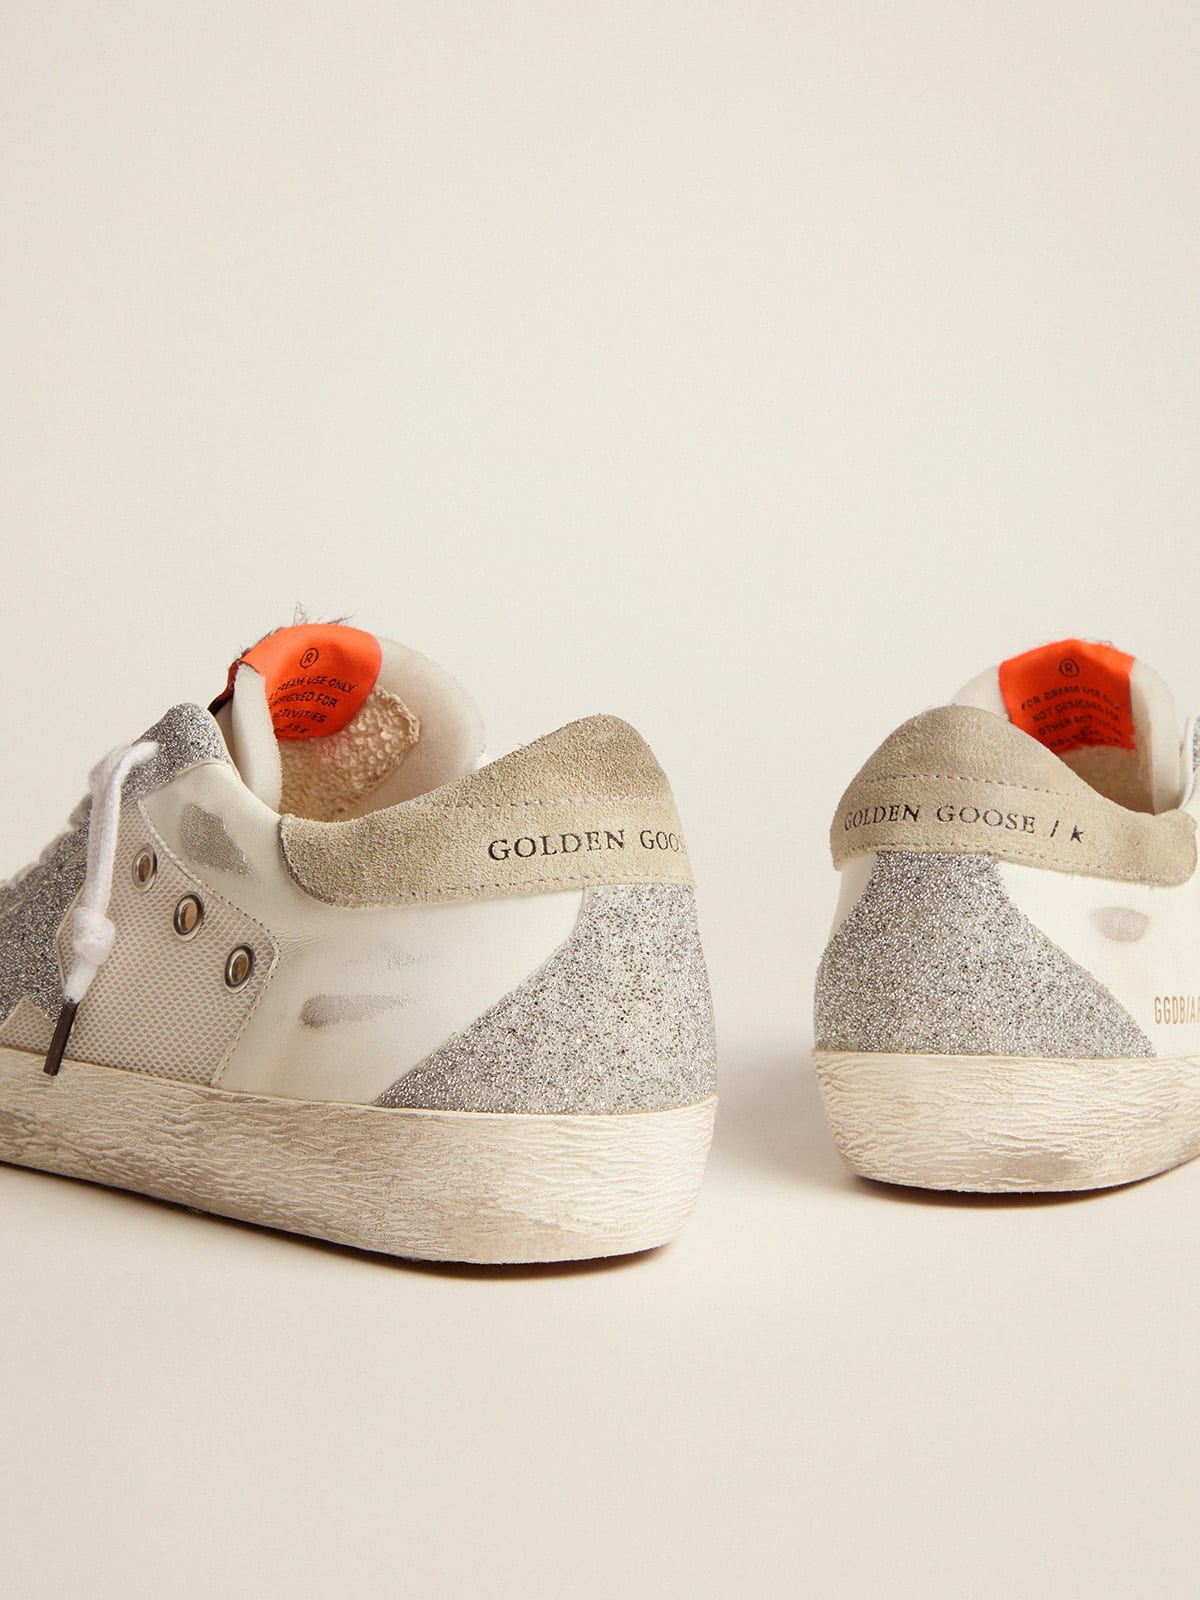 Golden Goose - Sneakers Super-Star LTD en cuir et résille blancs avec étoile et empiècements en petits cristaux argentés in 